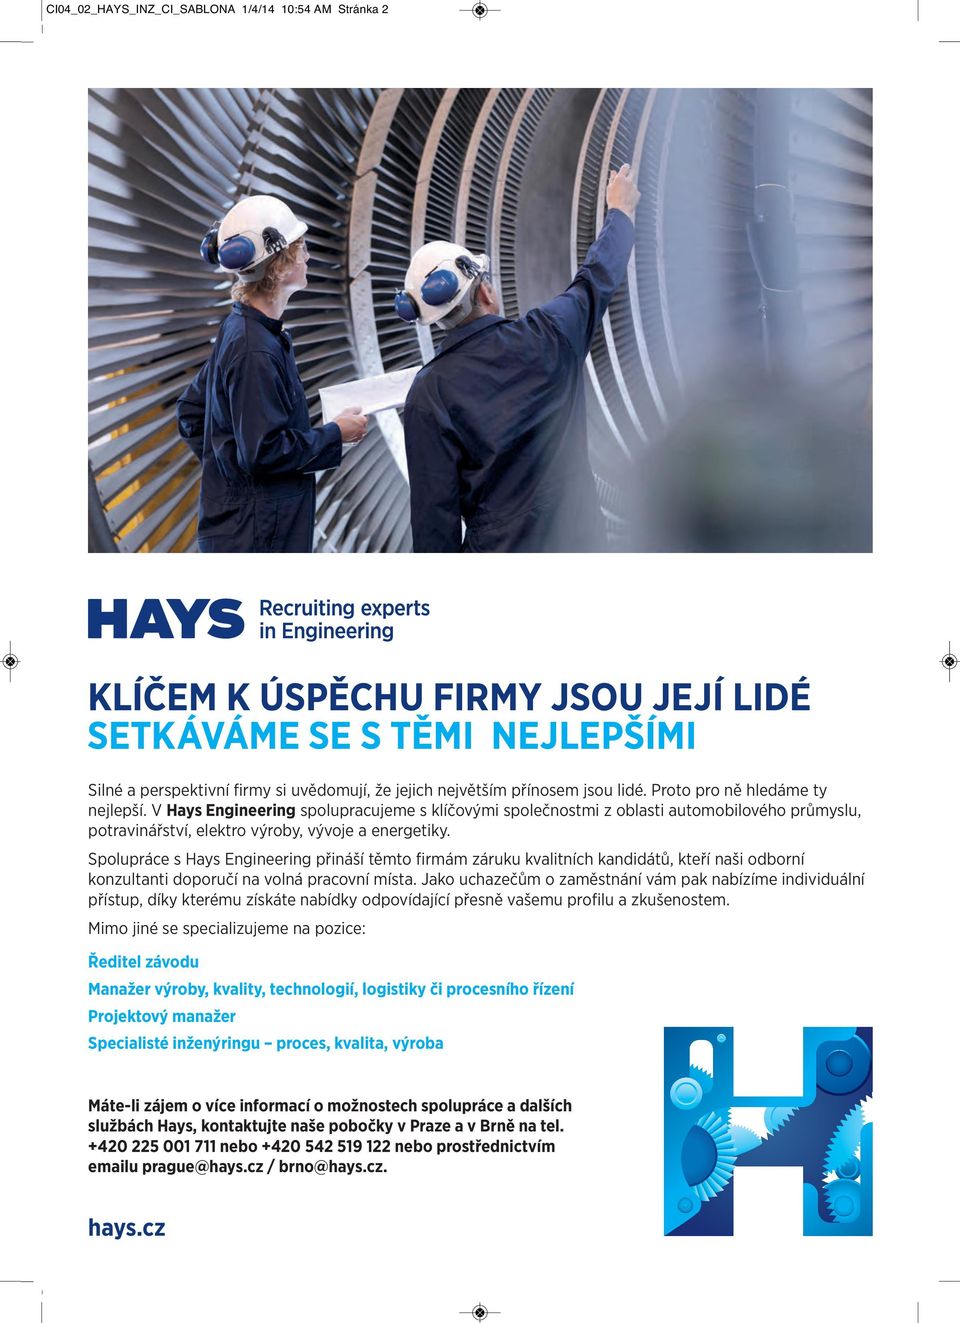 Spolupráce s Hays Engineering přináší těmto firmám záruku kvalitních kandidátů, kteří naši odborní konzultanti doporučí na volná pracovní místa.